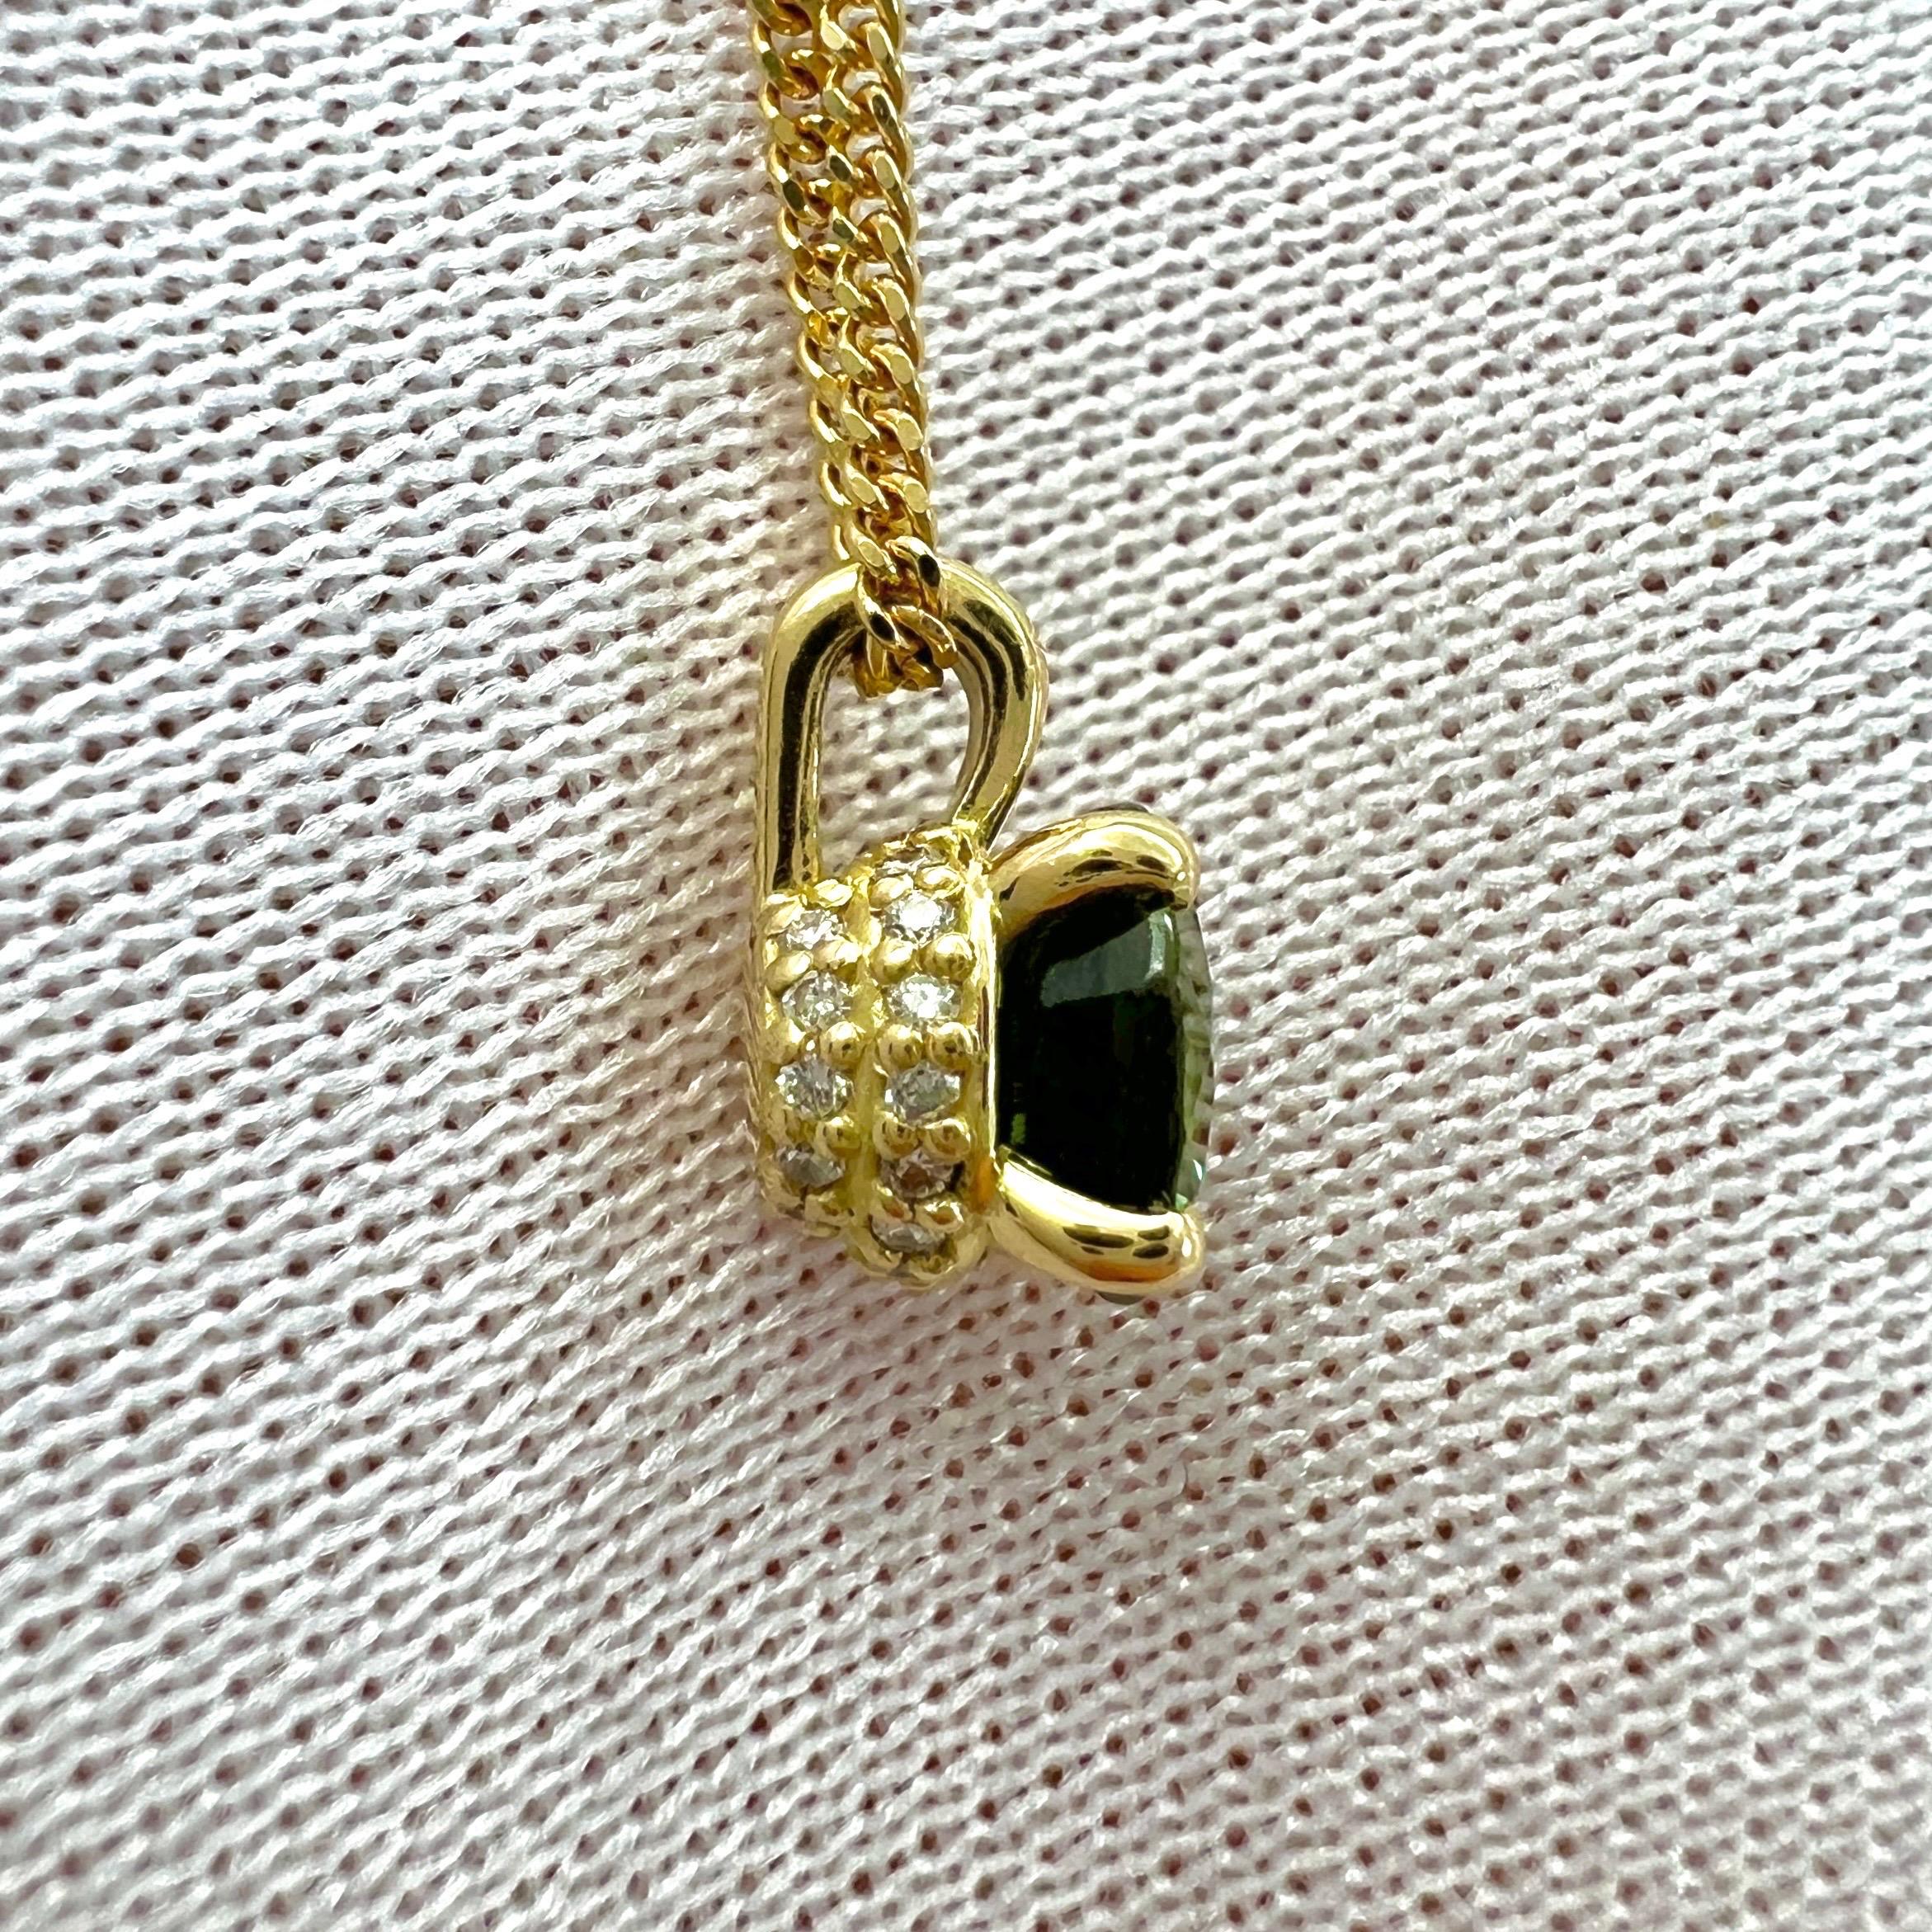 Round Cut Unique 1 Carat Natural Parti Color Sapphire Diamond 18k Gold Hidden Halo Pendant For Sale